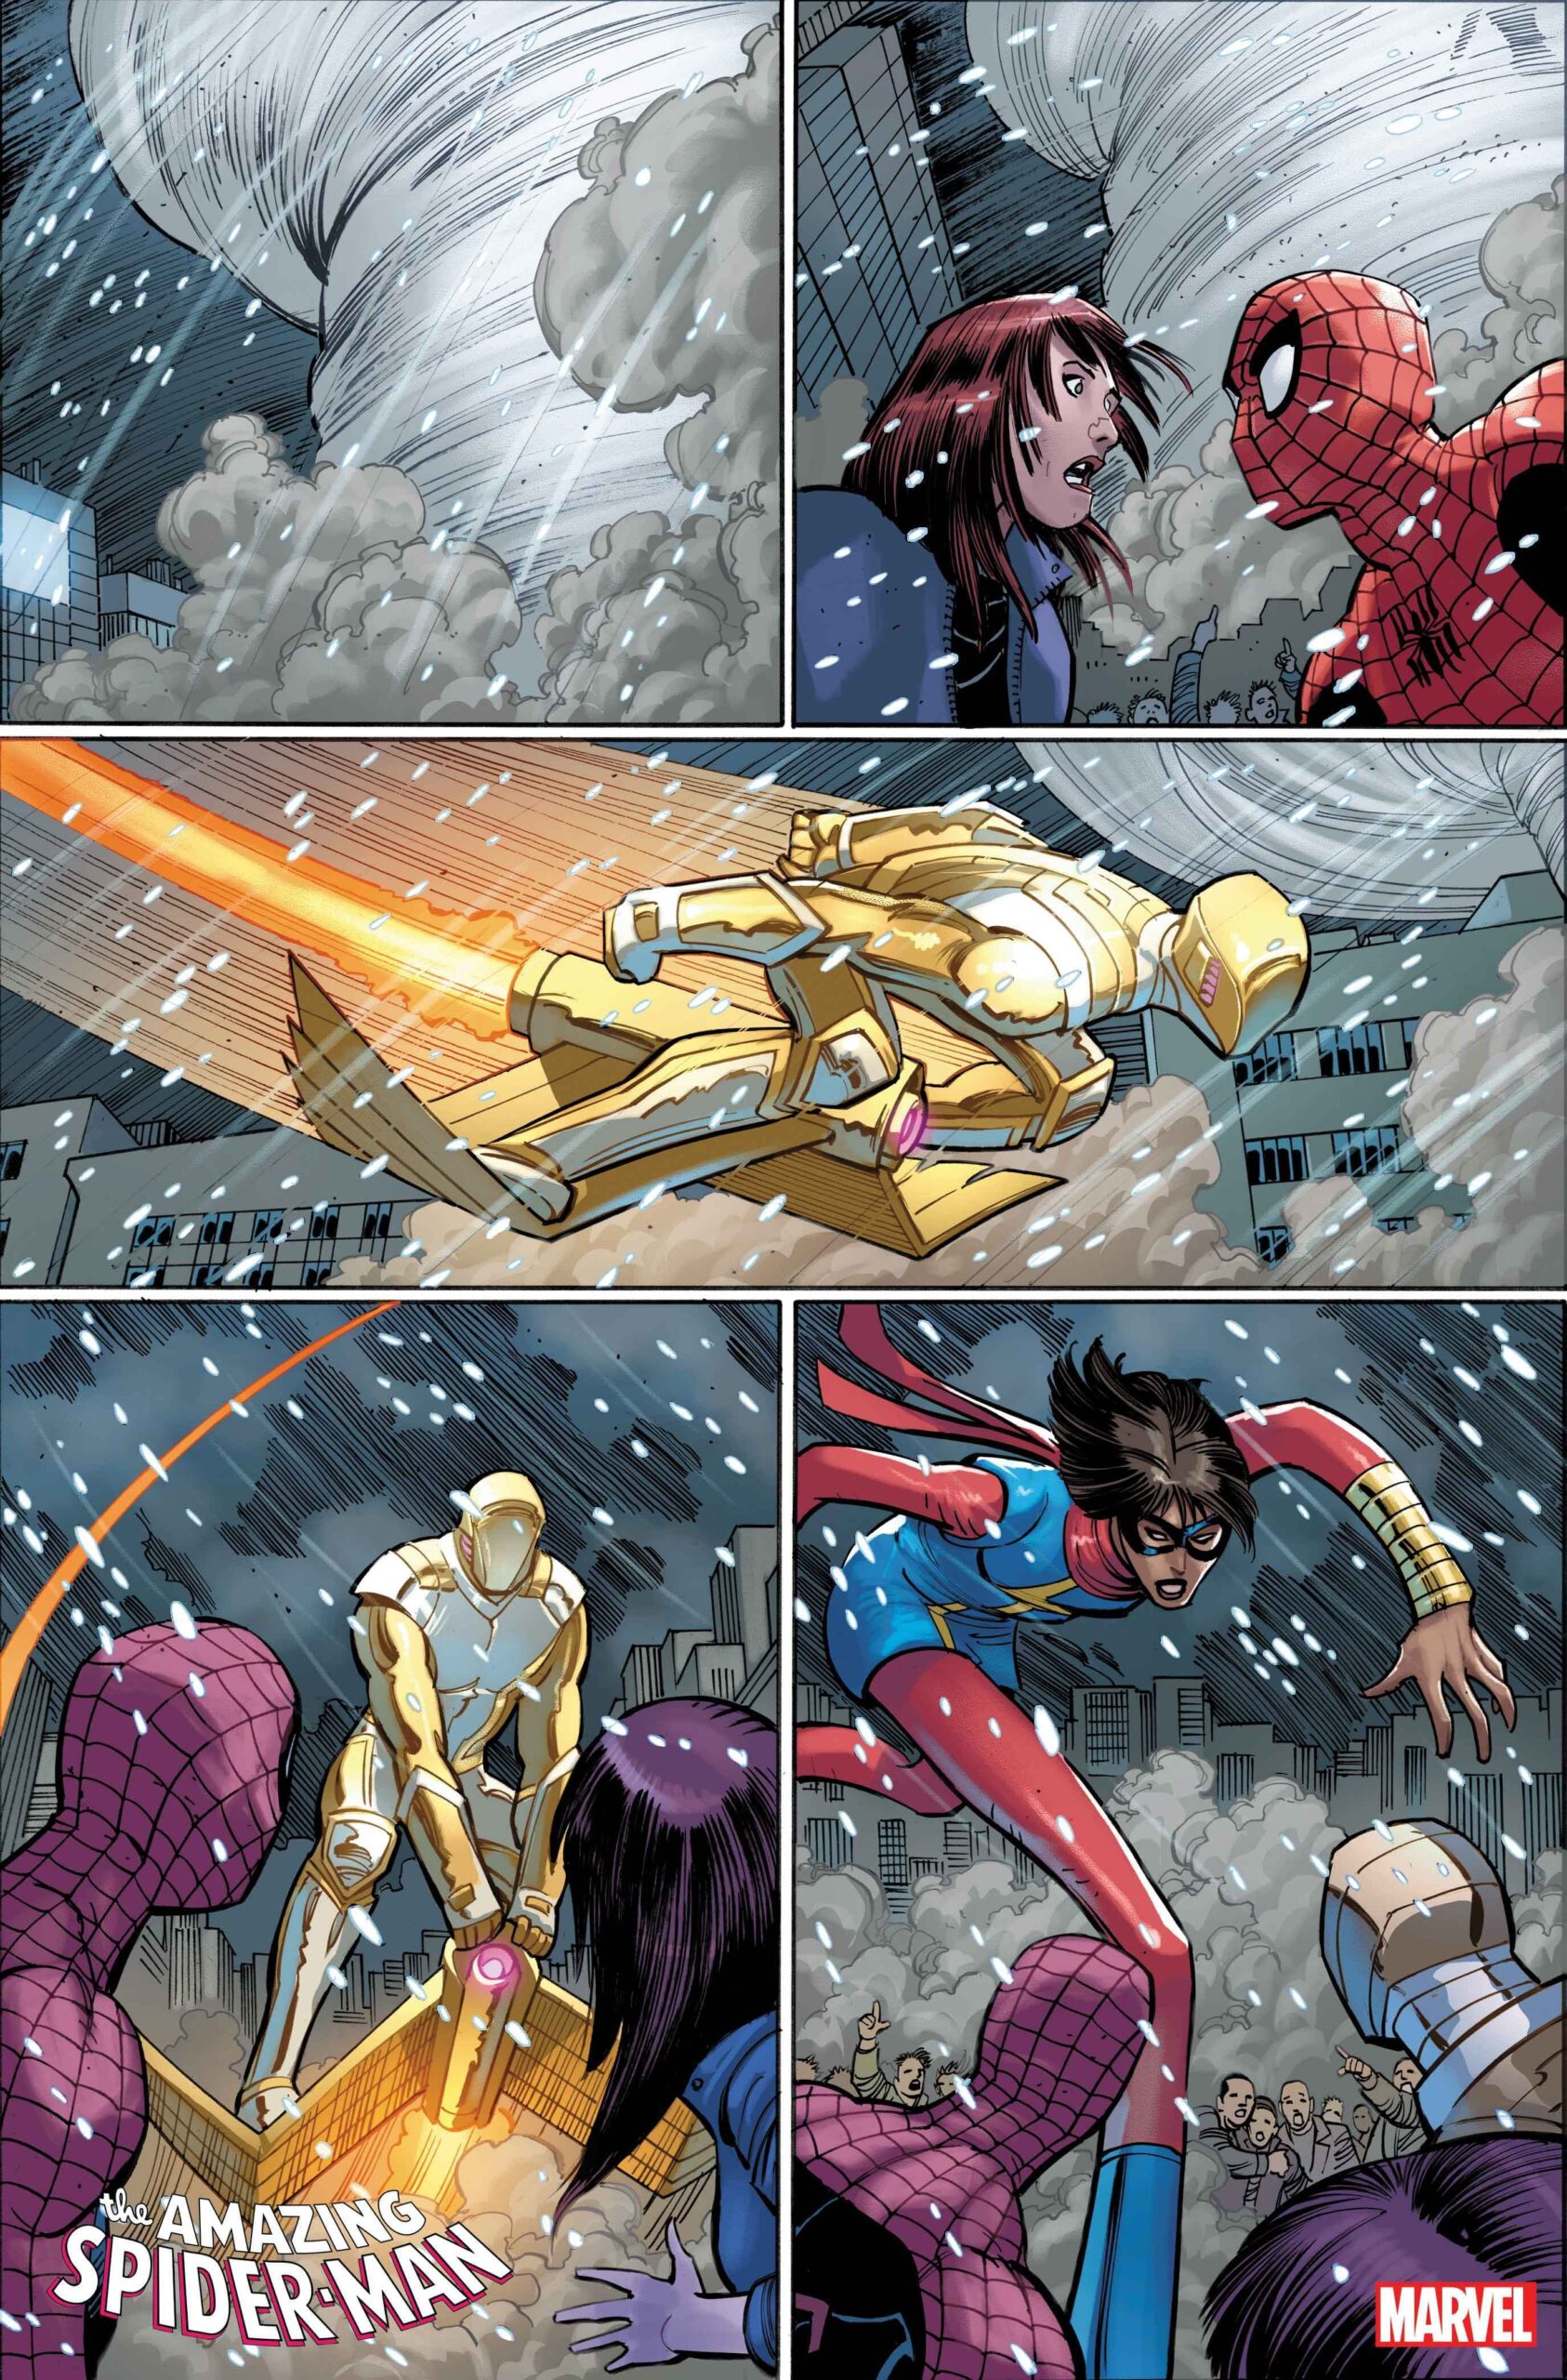 A Morte de Ms Marvel - Amazing Spider-Man #26 - Marvel Comics - Preview 2 - Blog Farofeiros